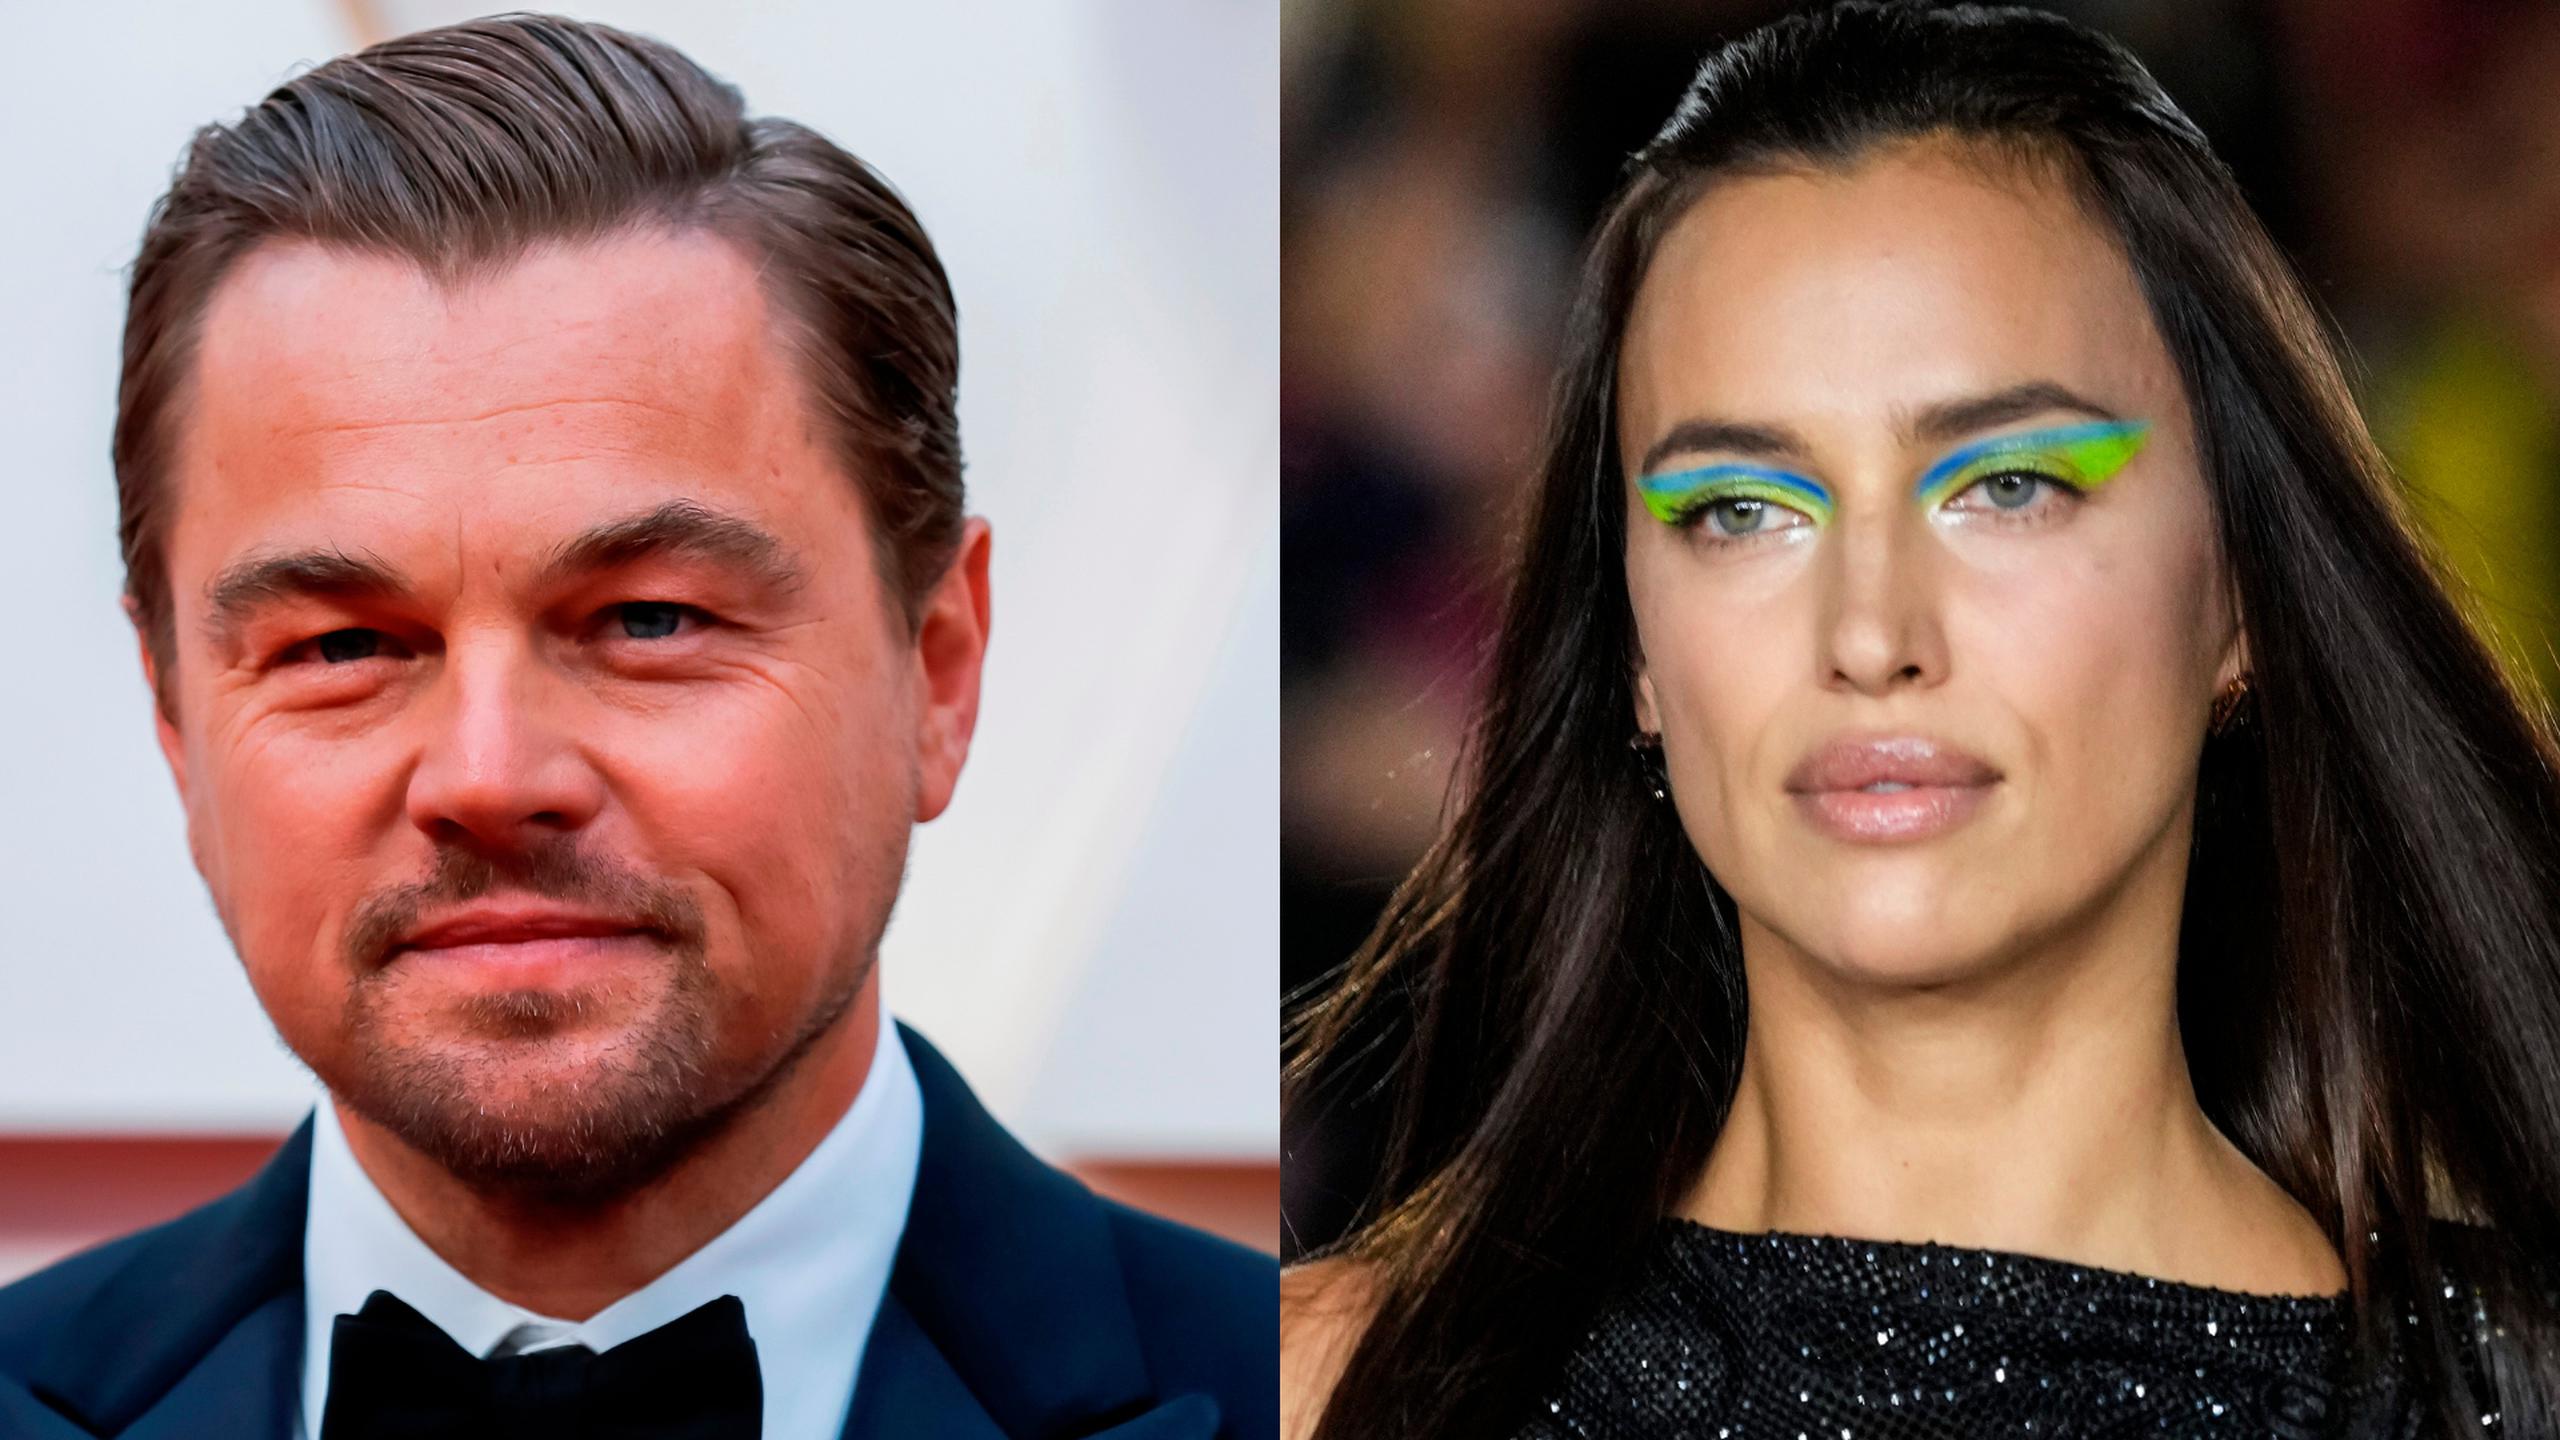 El actor Leonardo DiCaprio sorprendió en el festival Coachella al verse en una fiesta con la modelo rusa Irina Shayk, expareja de su amigo, Bradley Cooper.